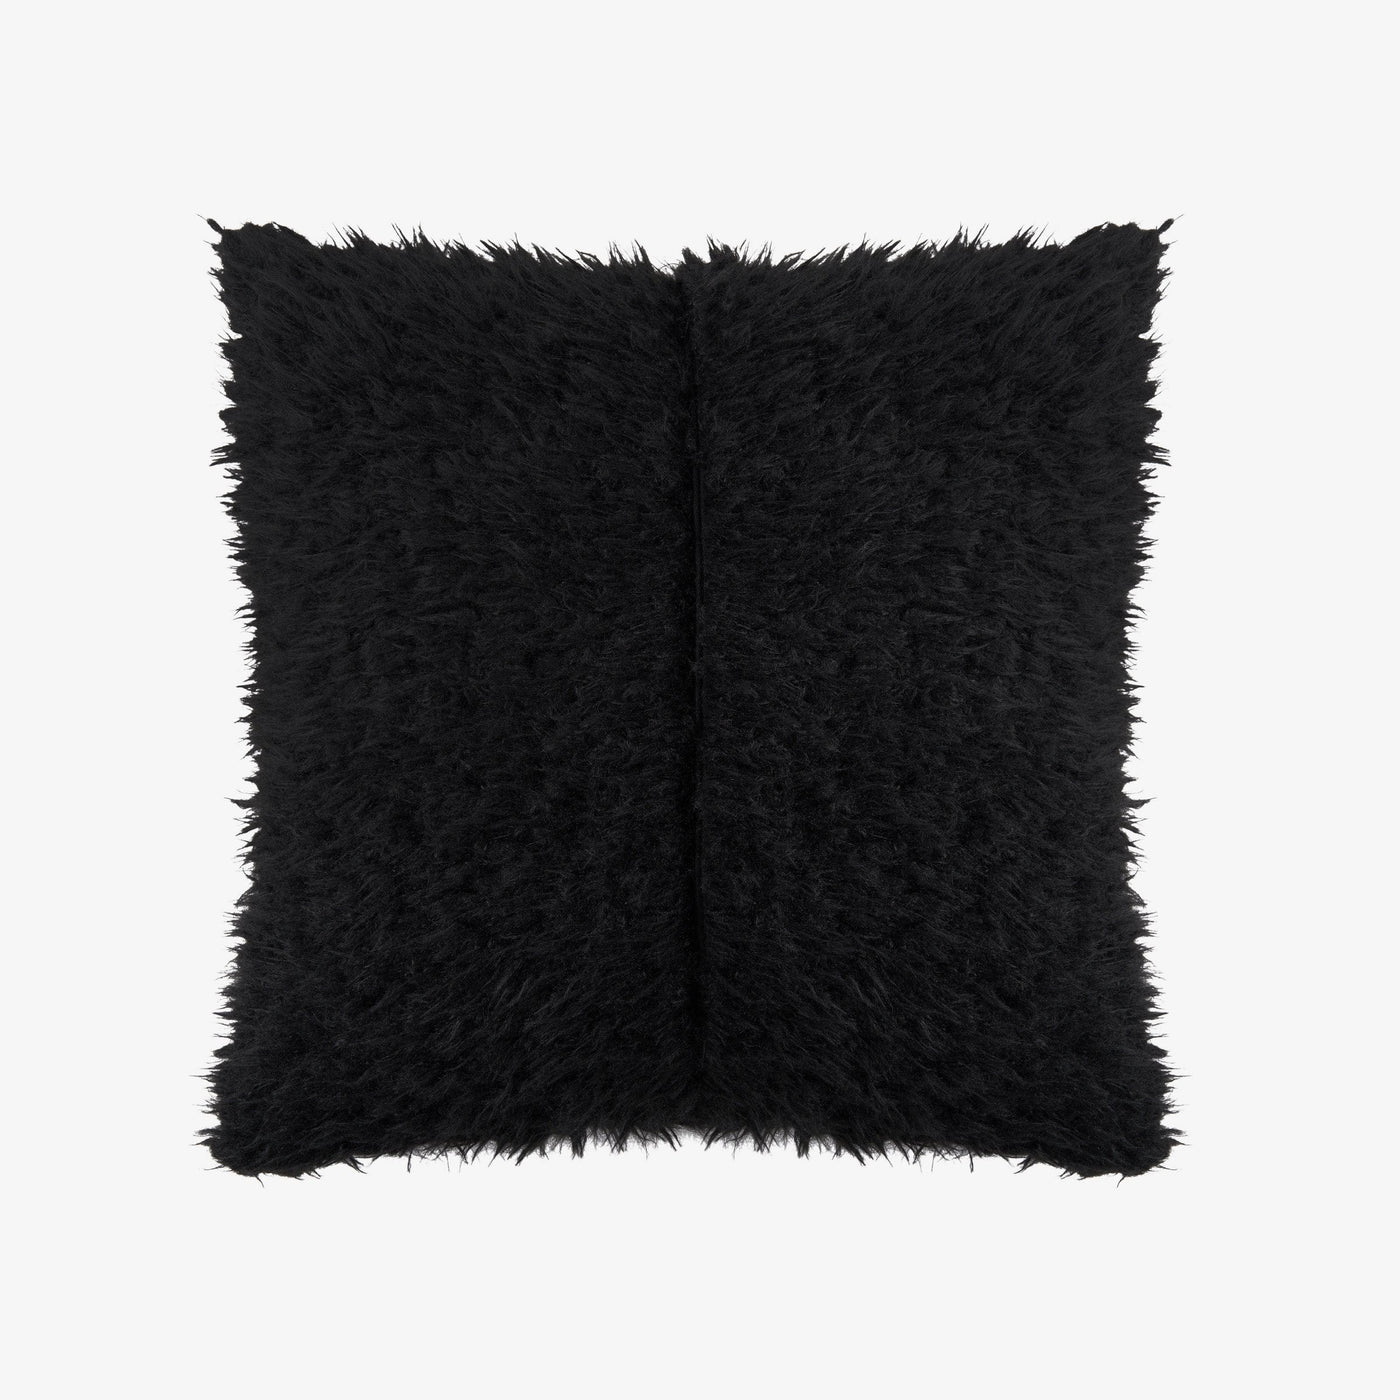 Cuddo Faux Fur Cushion Cover, Black, 45x45 cm Cushion Covers sazy.com